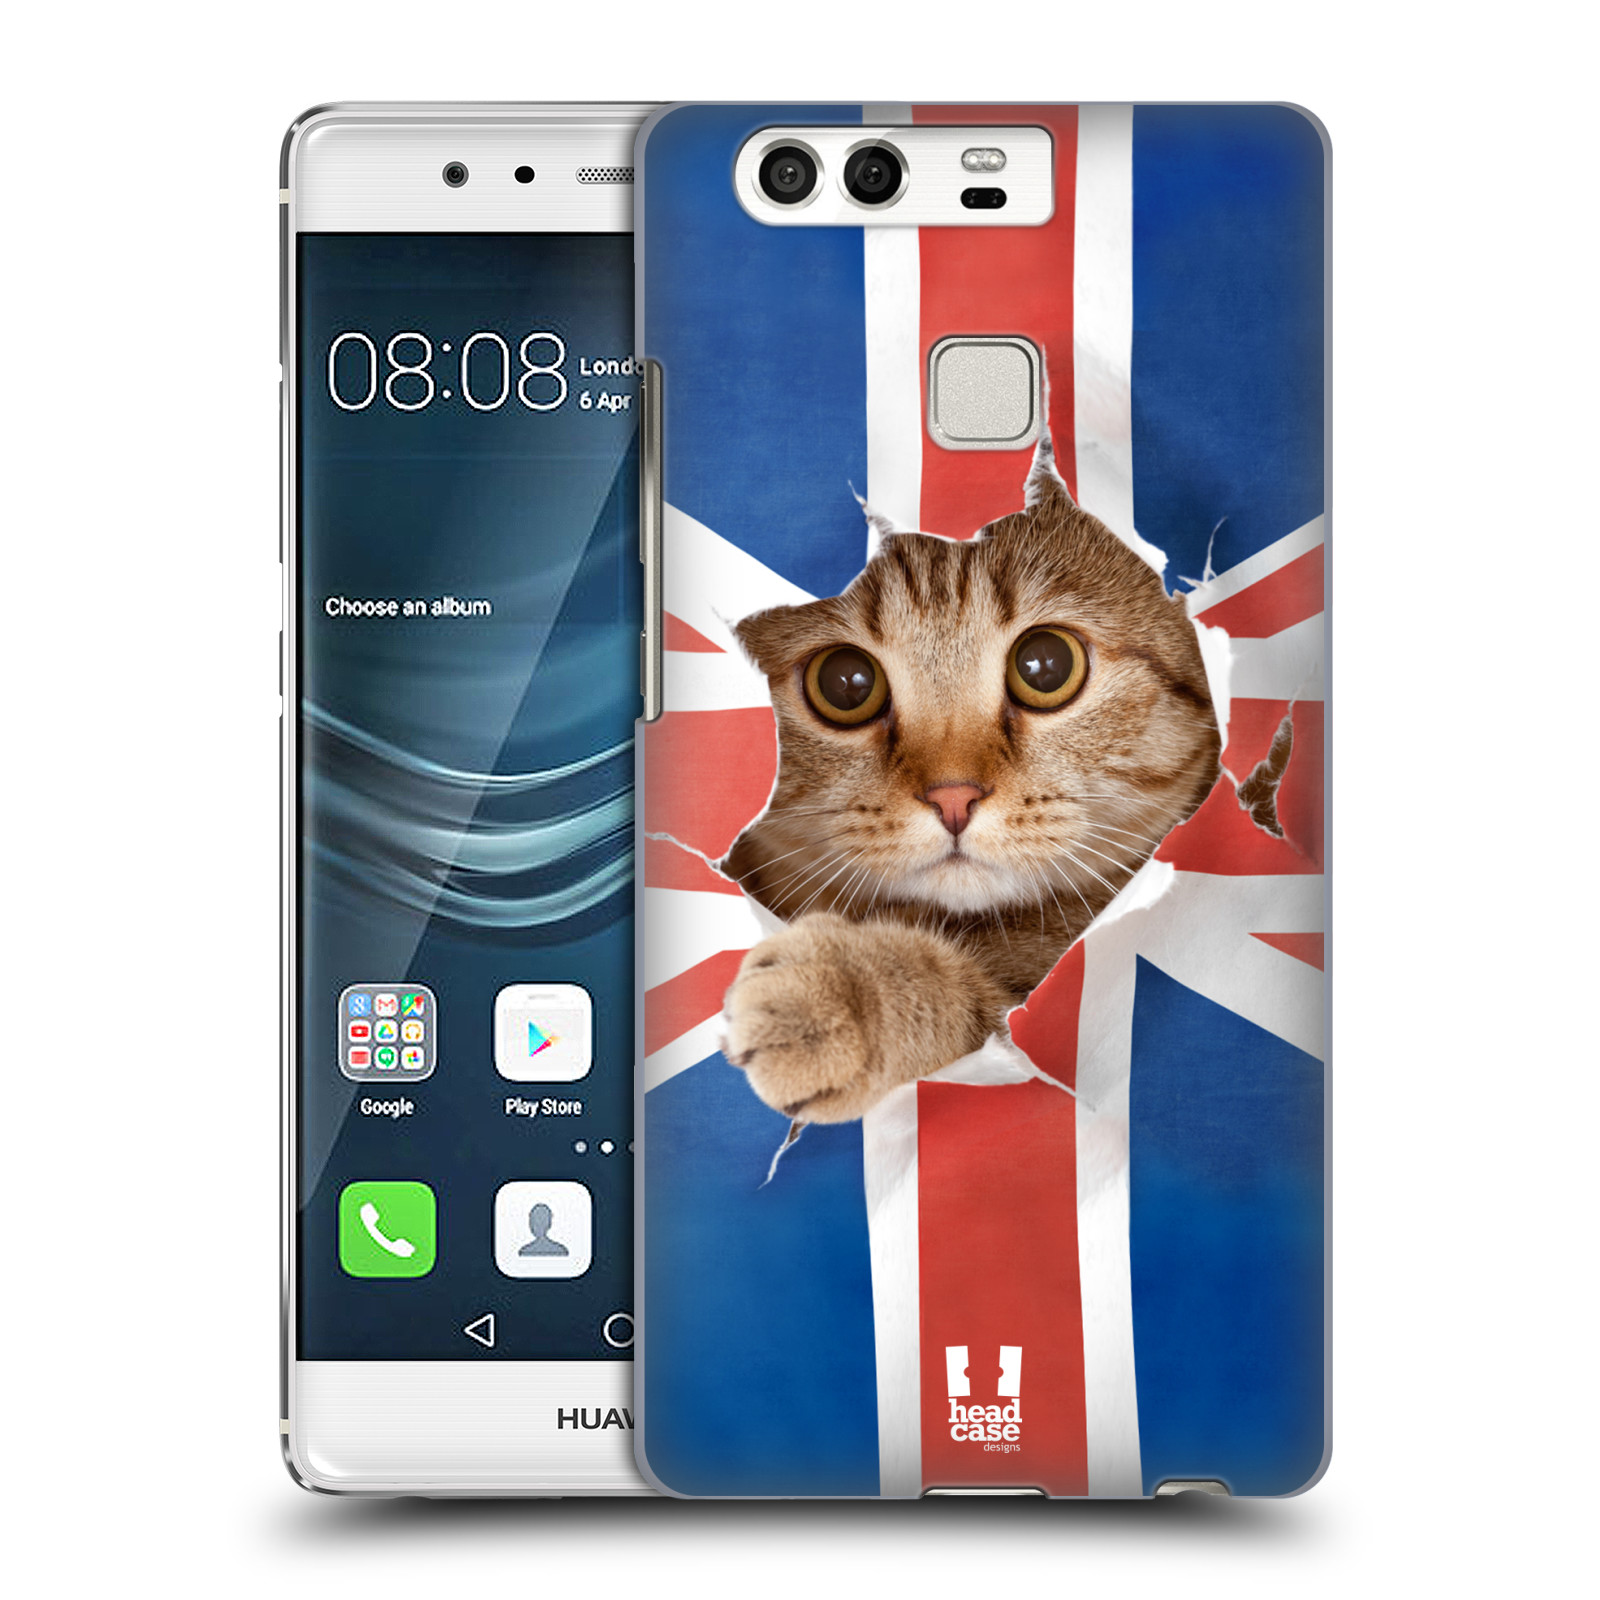 HEAD CASE plastový obal na mobil Huawei P9 / P9 DUAL SIM vzor Legrační zvířátka kočička a Velká Británie vlajka